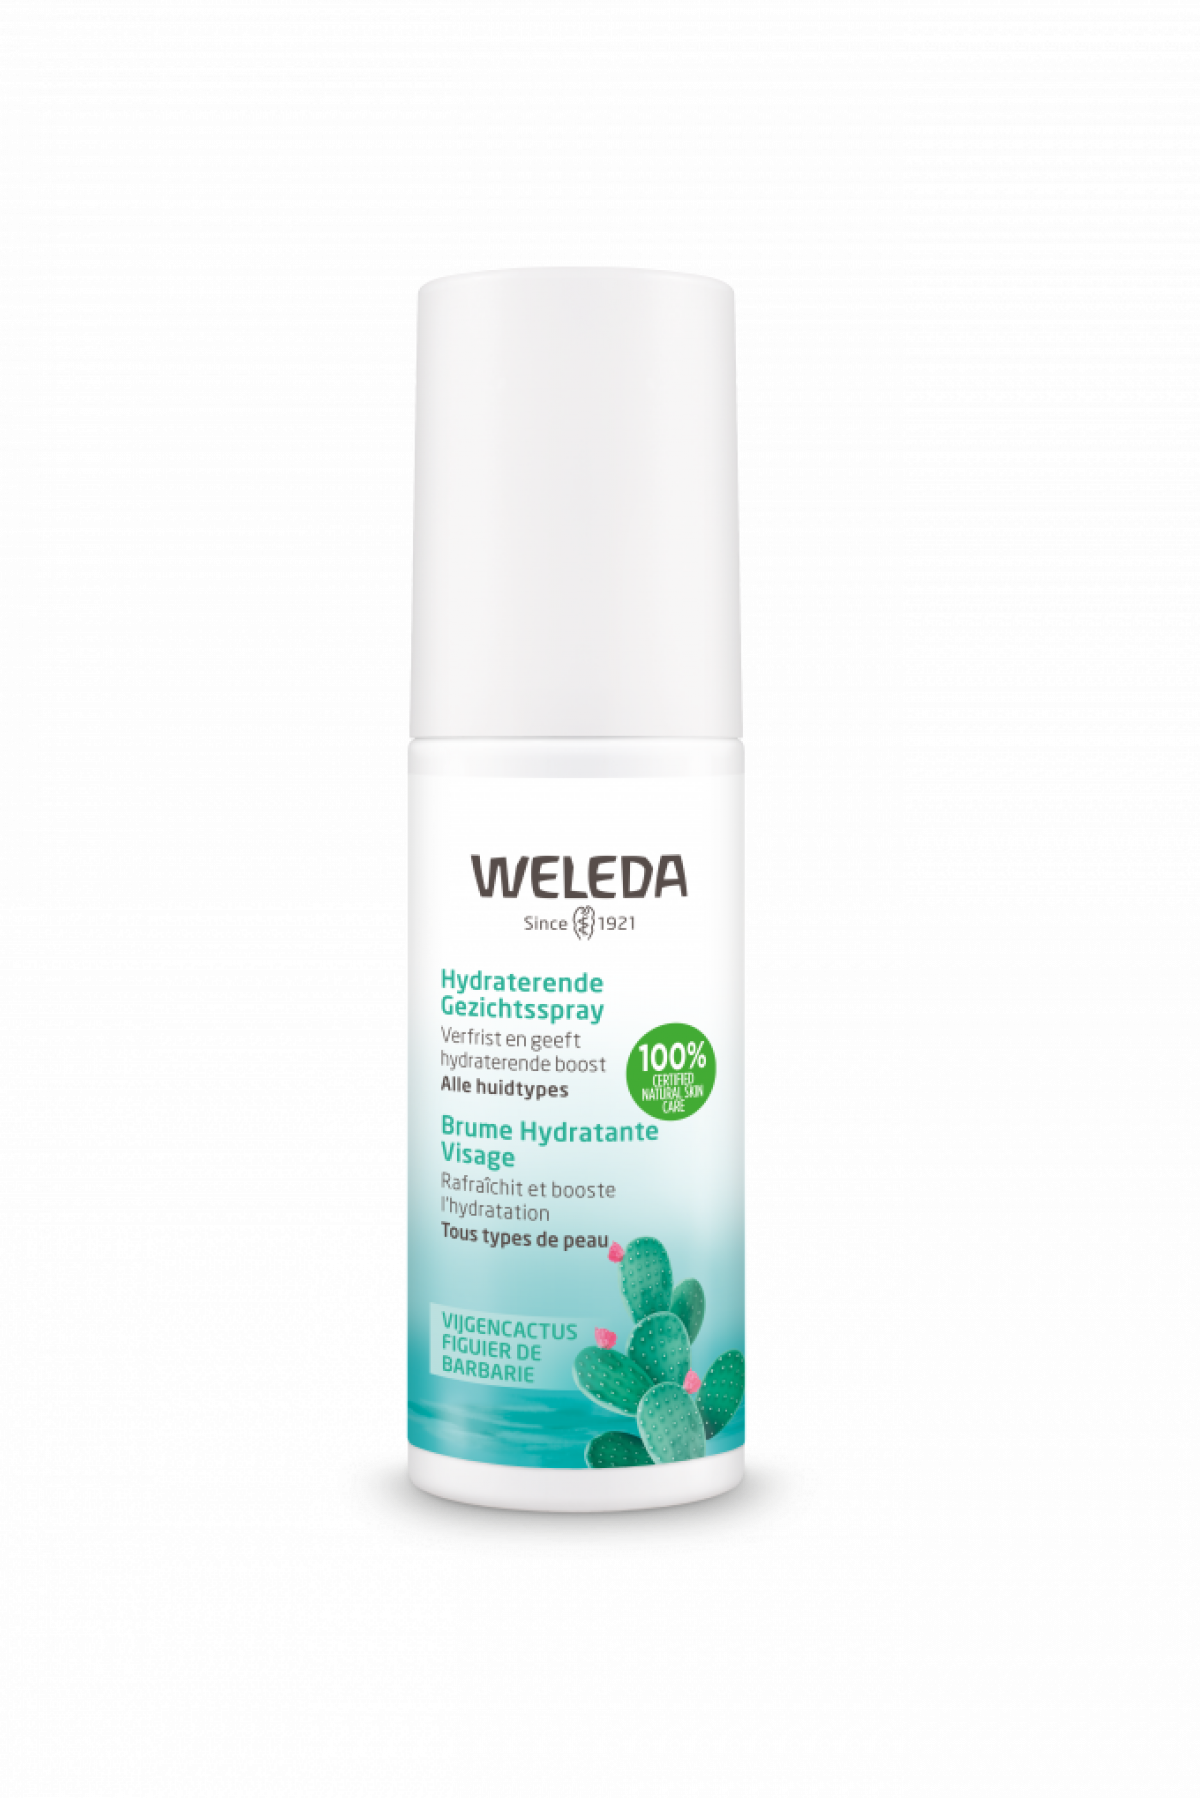 Hydraterende gezichtsspray met vijgencactus van WELEDA